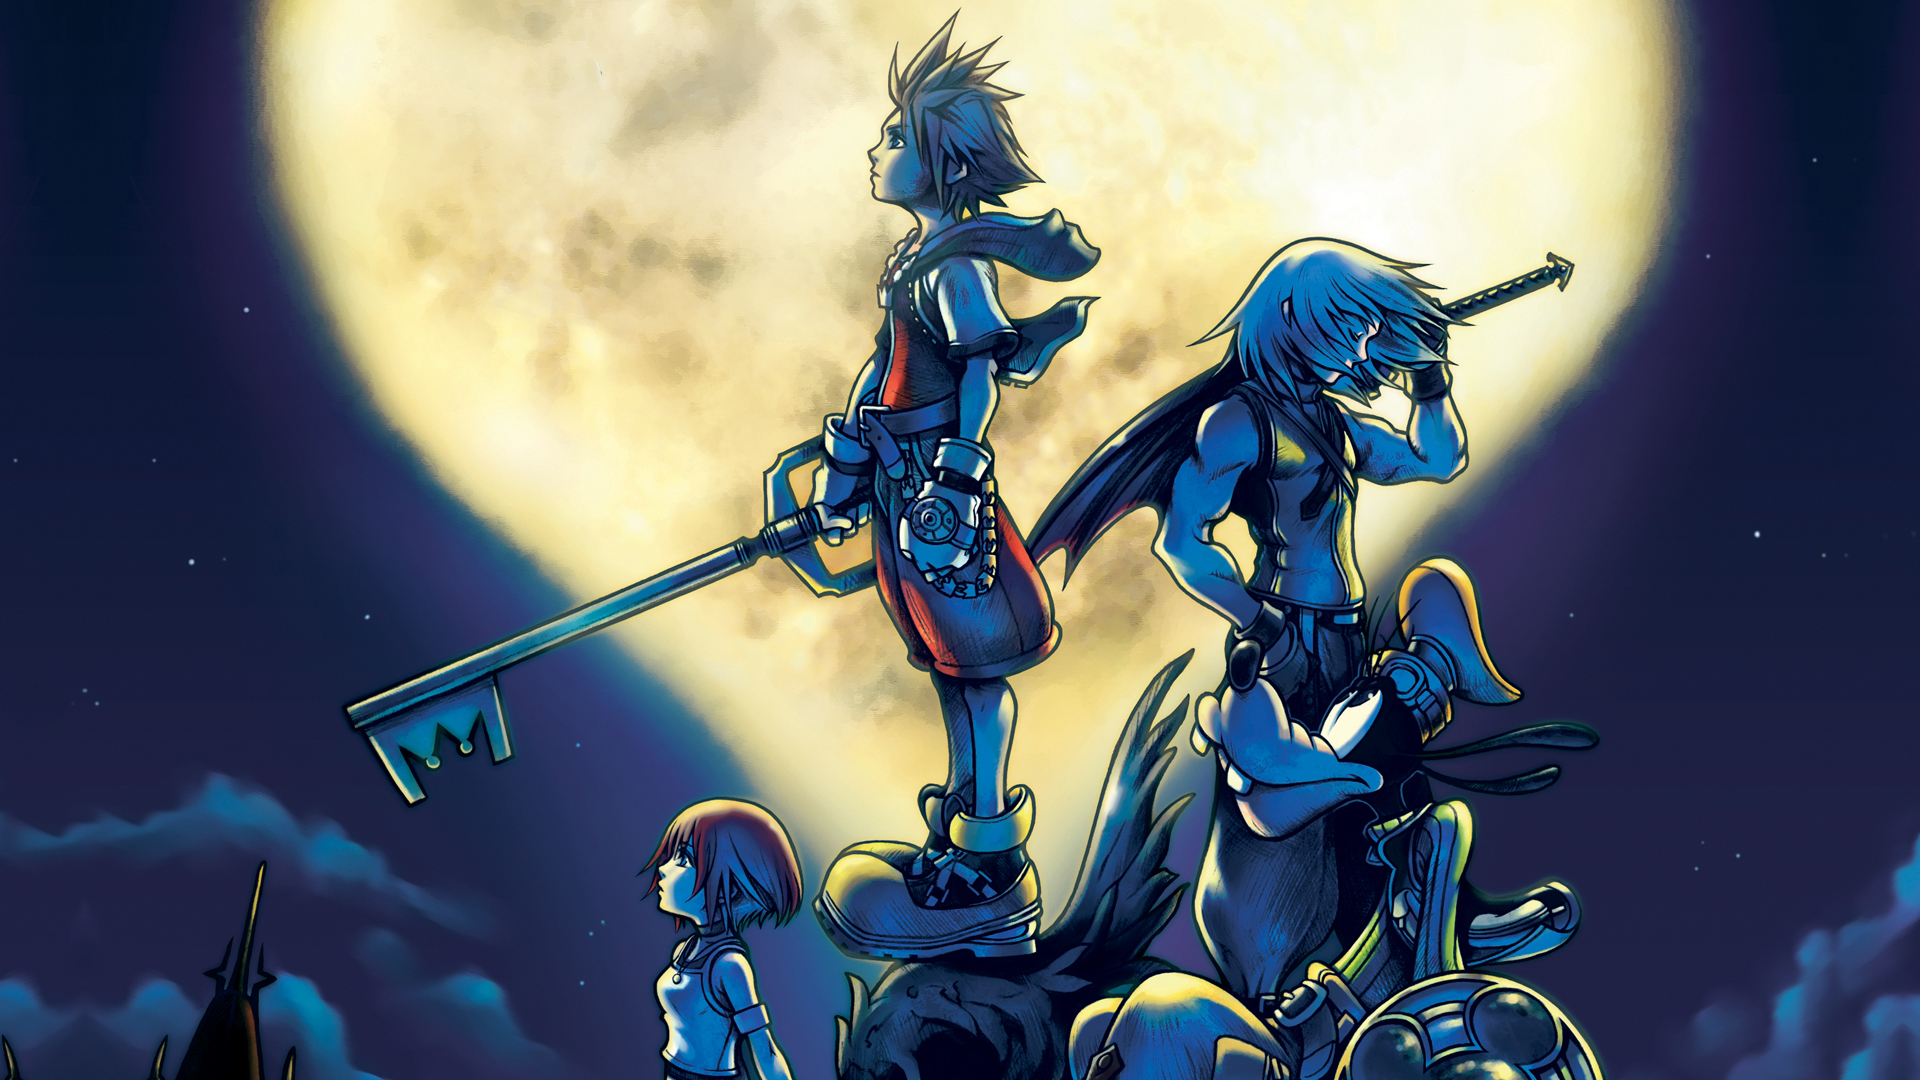 Kingdom Hearts 1.5 2.5 HD ReMIX: KH Final Mix